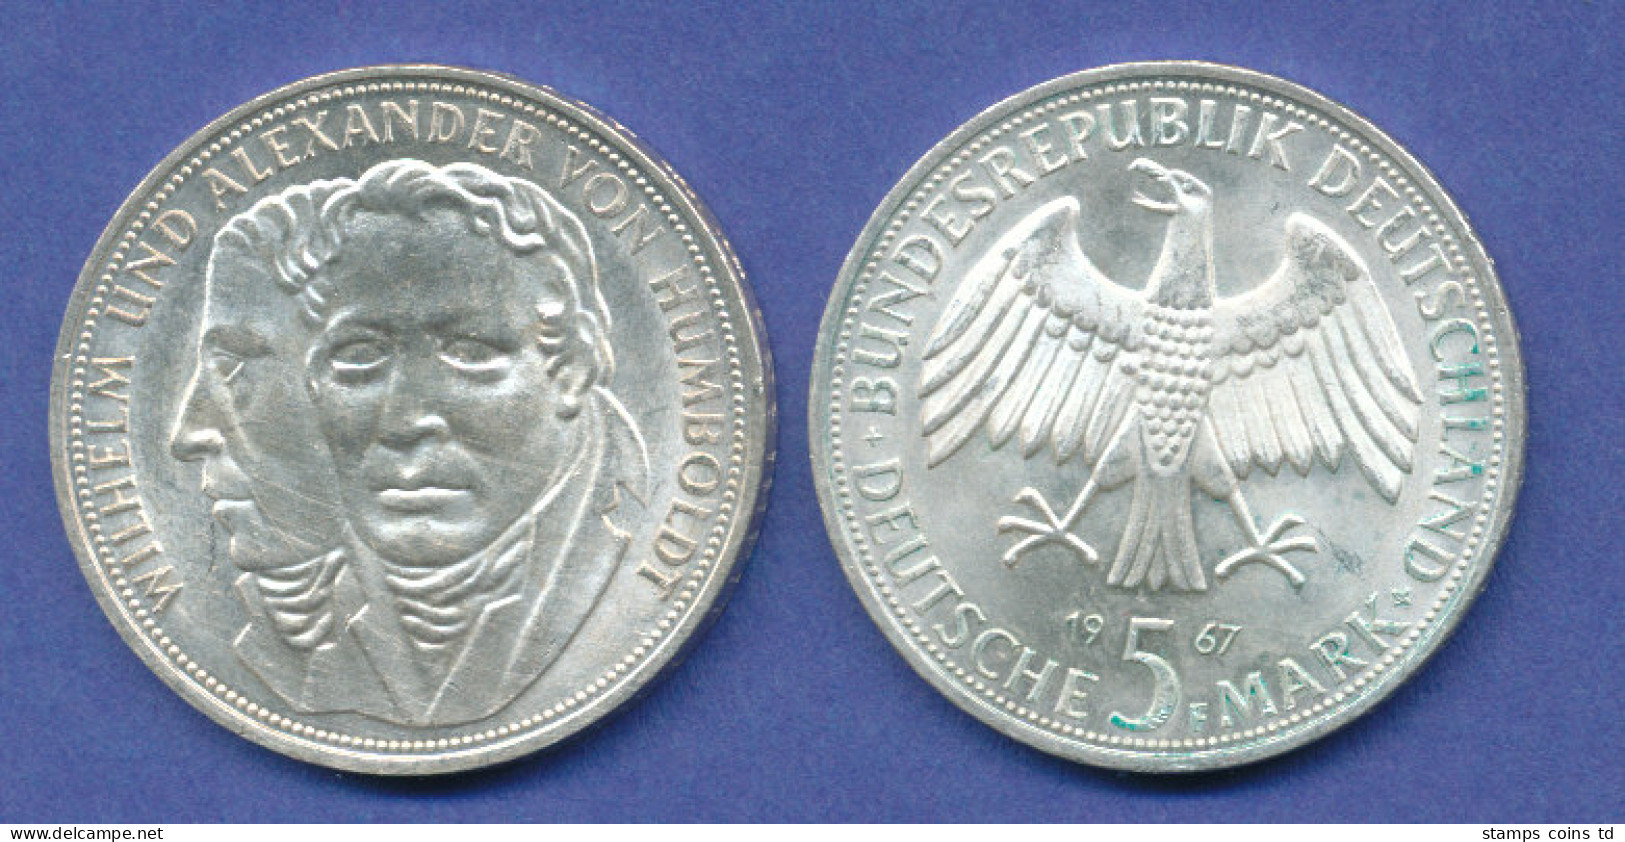 Bundesrepublik 5DM Silber-Gedenkmünze 1967, Wilhelm / Alexander Von Humboldt - 5 Mark